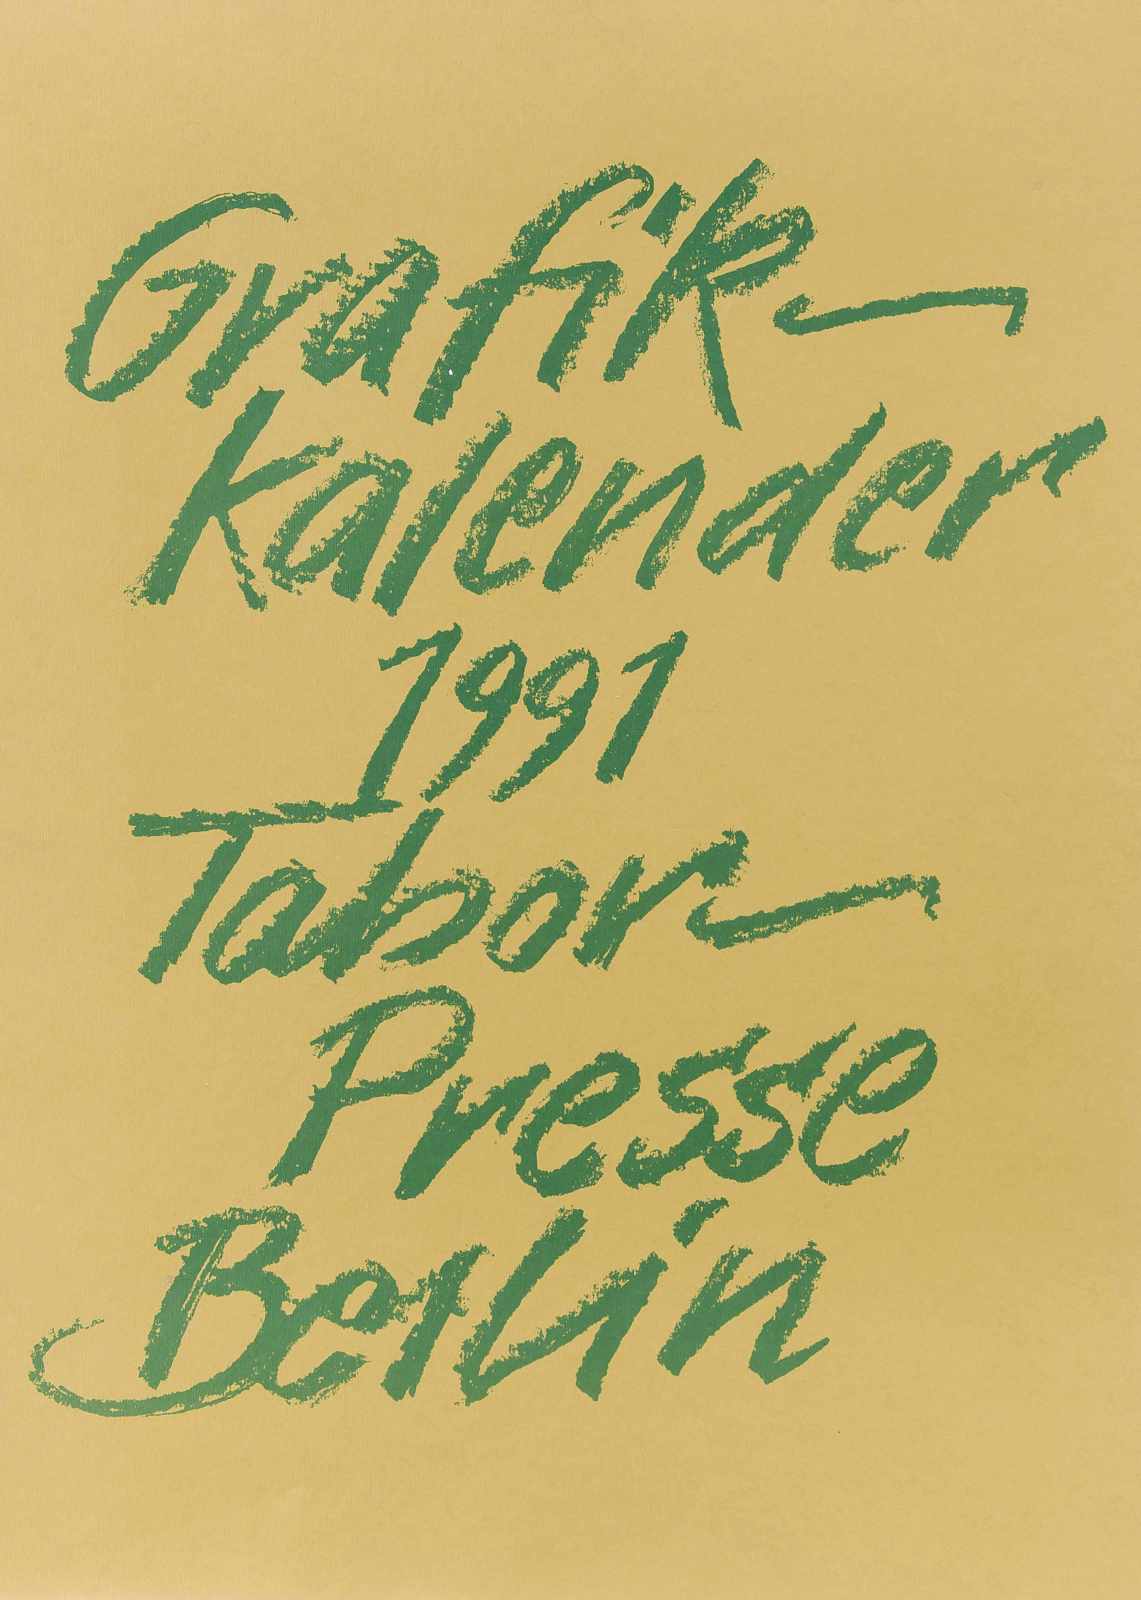 Grafik-Kalender 1991 Tabor-Presse Berlin, mit 12 montierten, handsignierten Originalgrafiken von